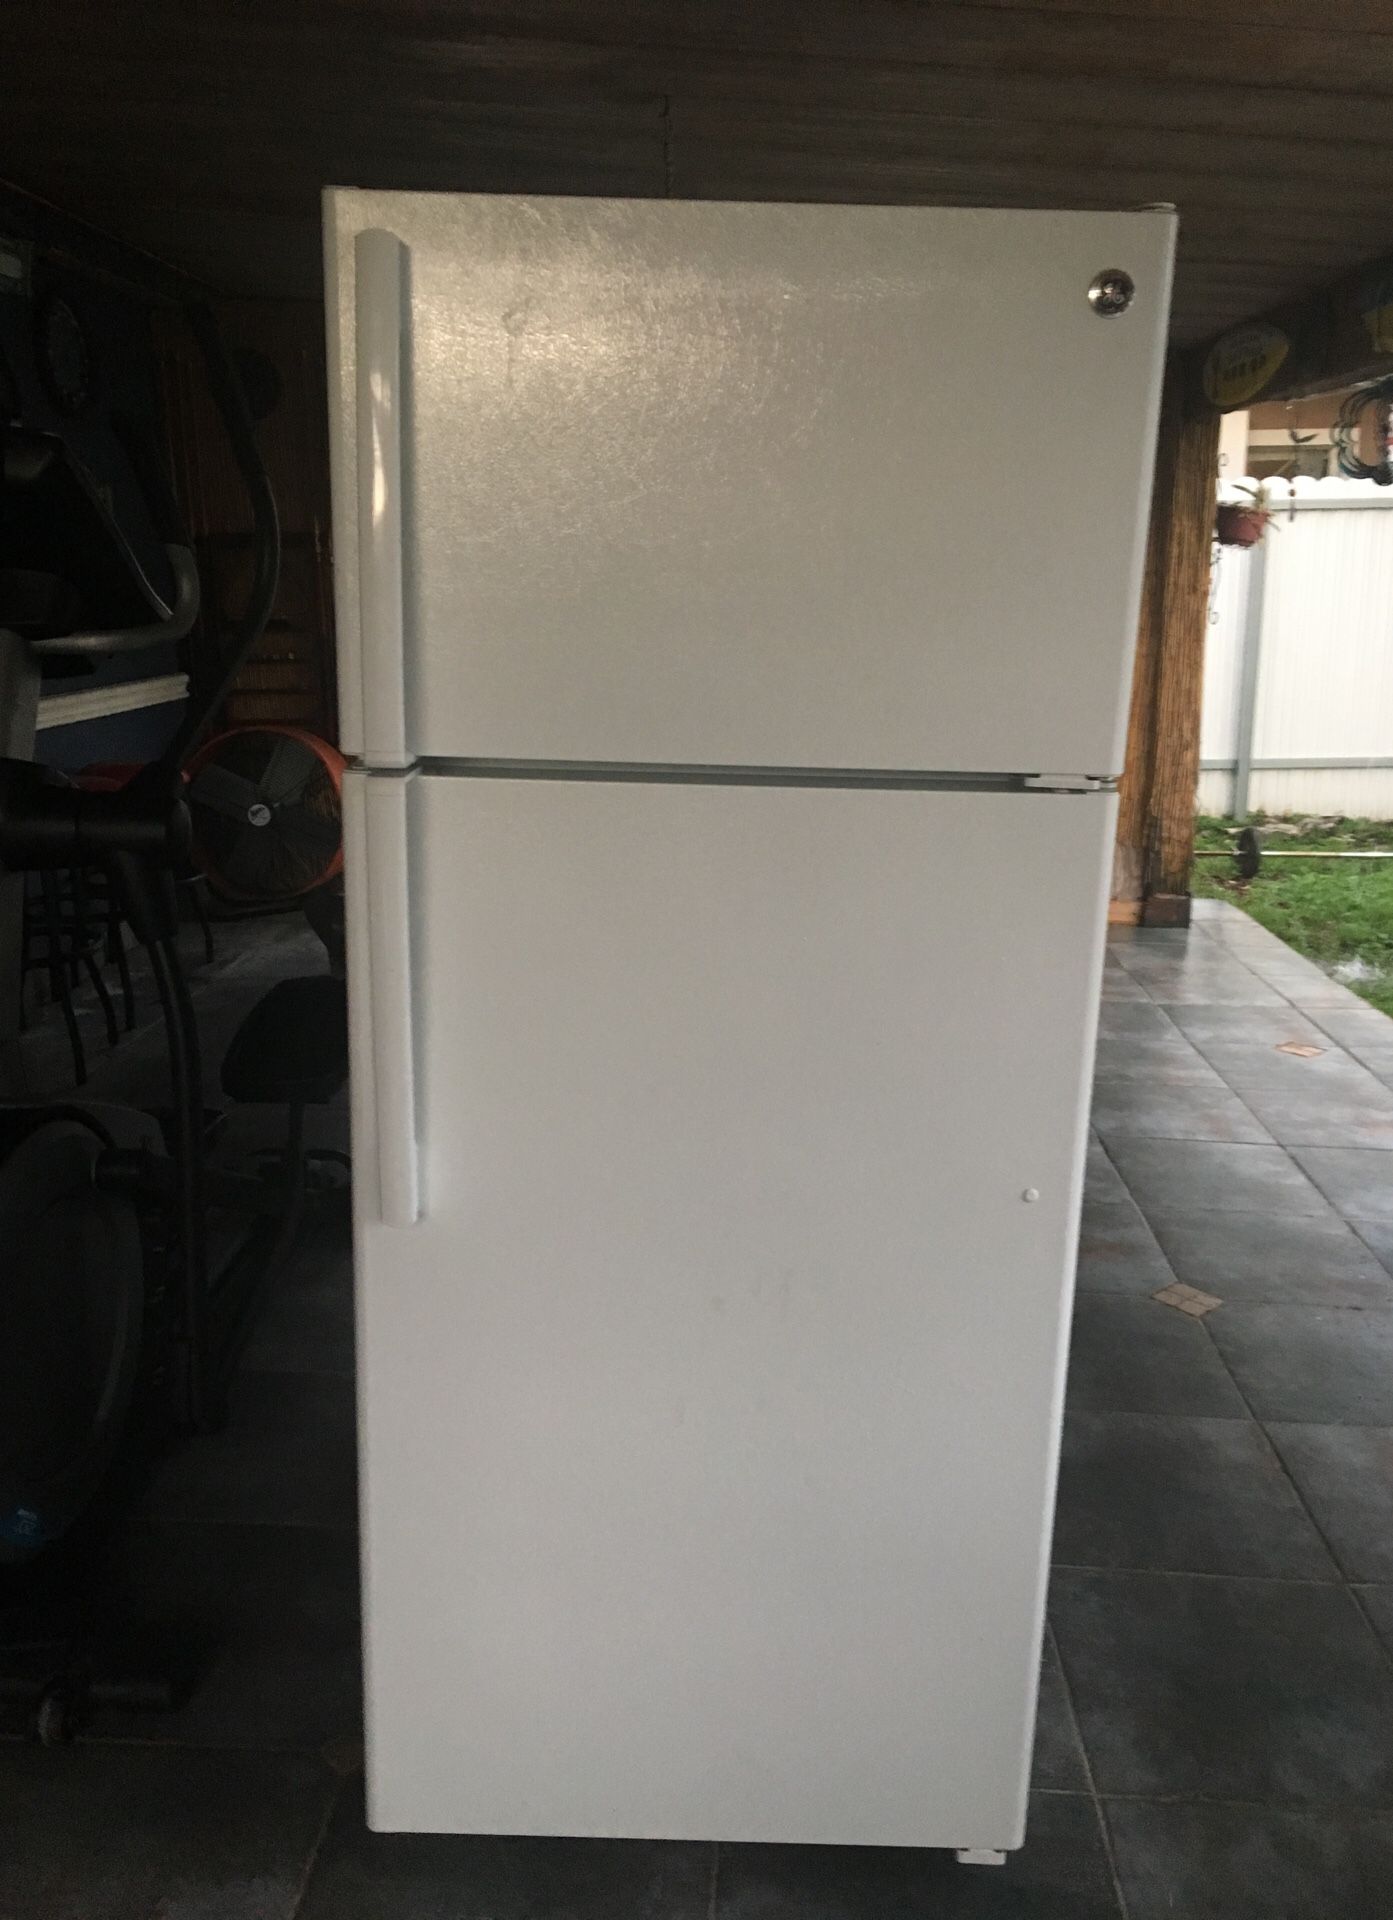 General Electric refrigerator 17.5 cu ft